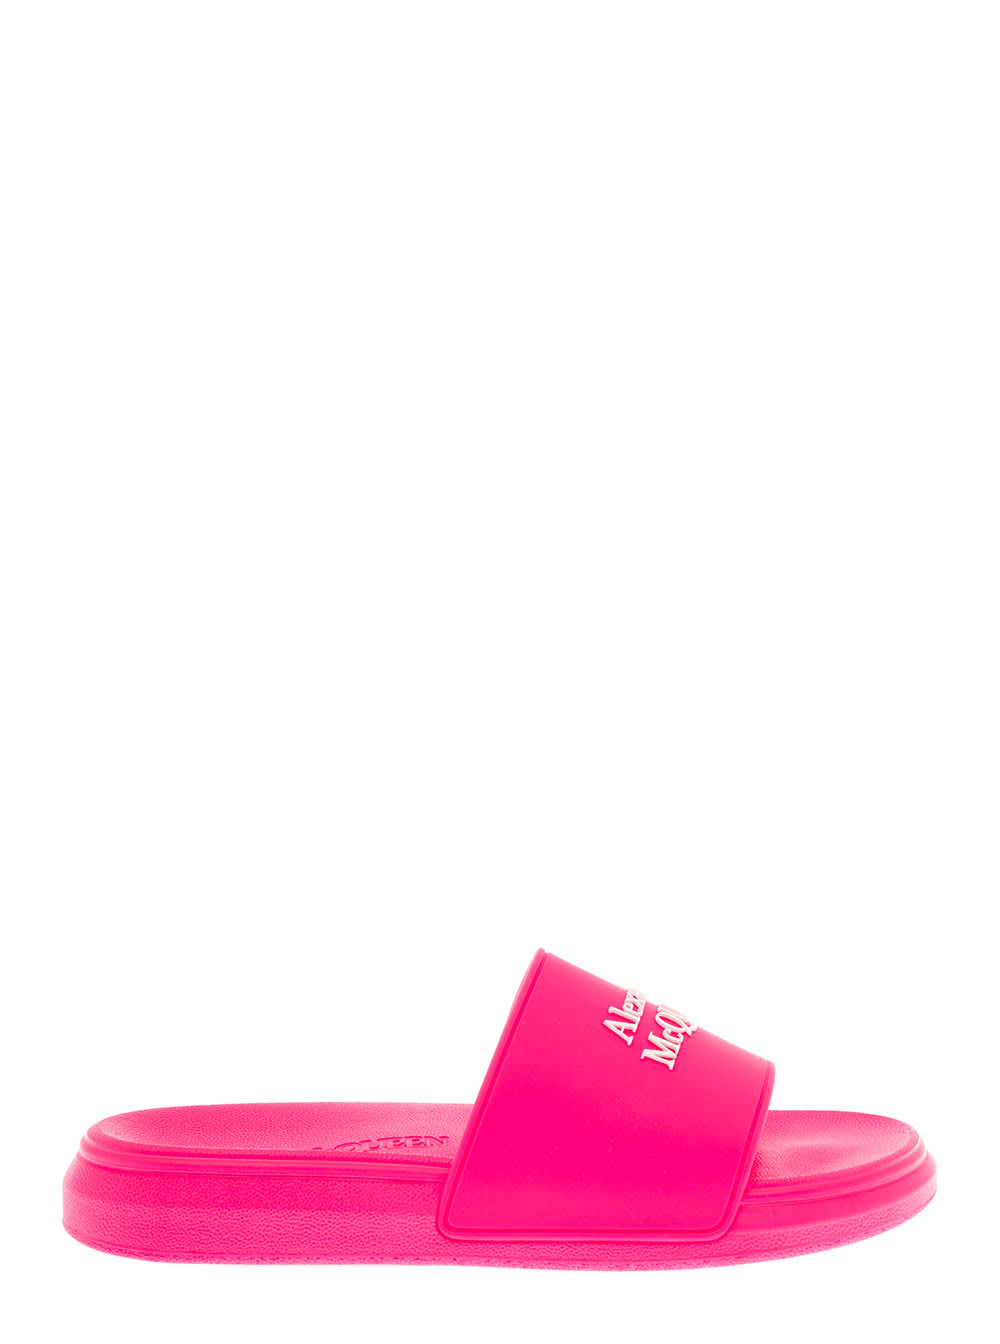 Alexander Mcqueen Womens Pink Rubber Slide Sandals